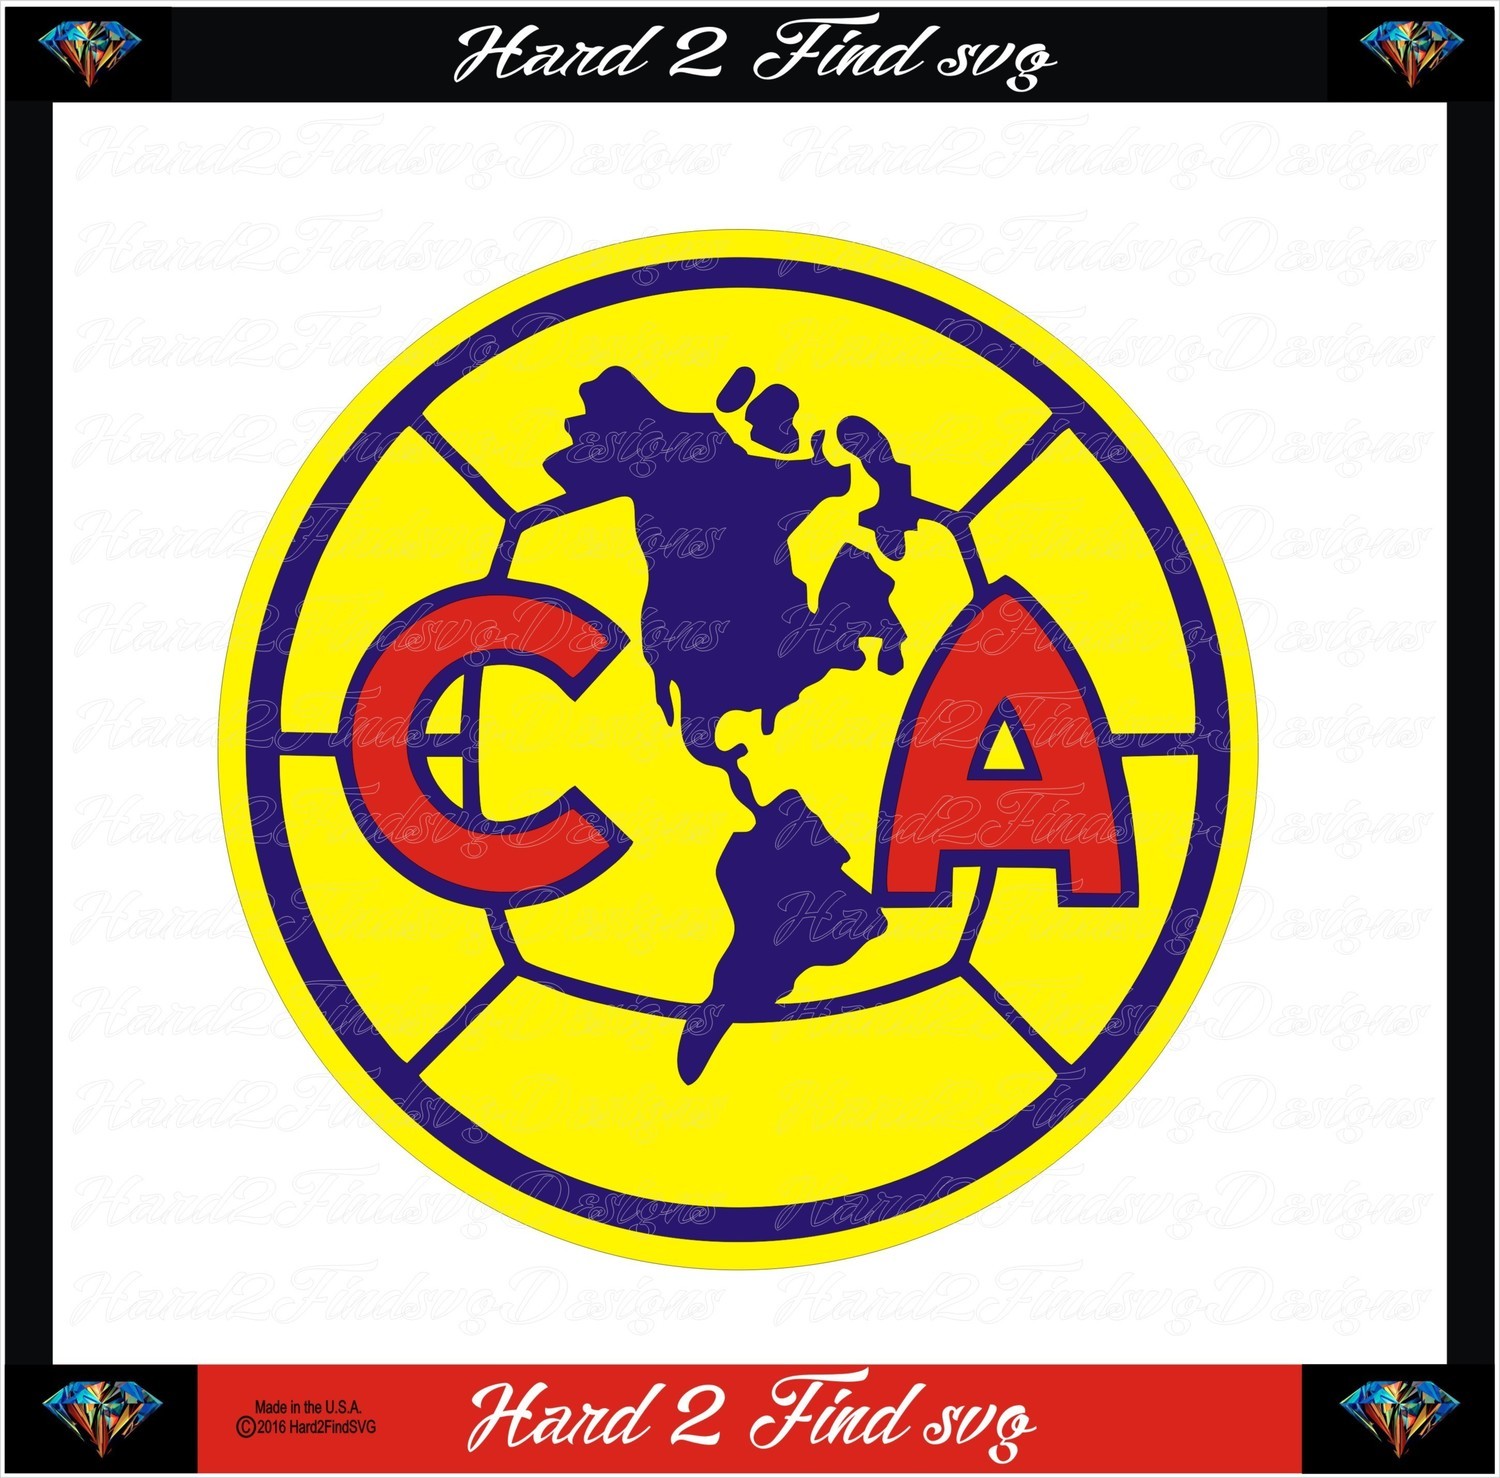 CA Club America Soccer Design SVG Files, Cricut, Silhouette Studio, Digital Cut Files